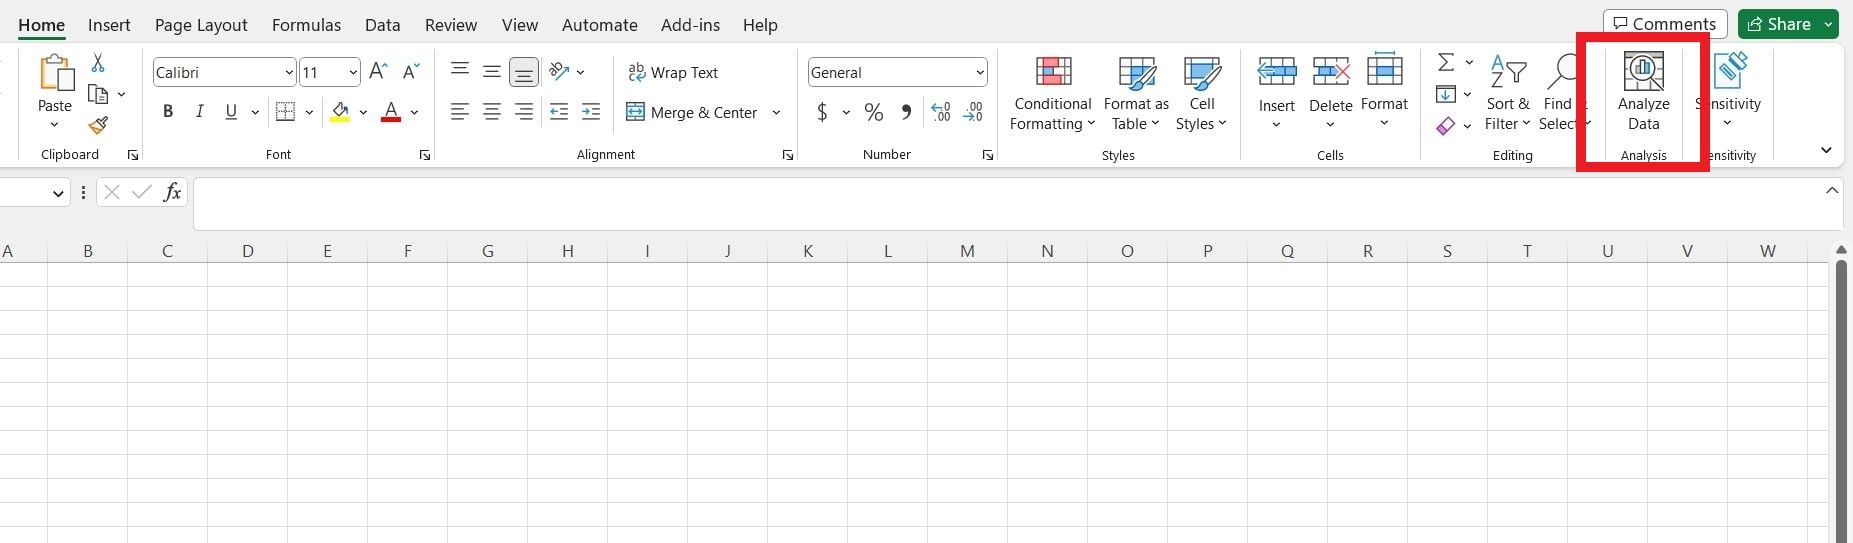 A spreadsheet that highlight Analyze Data